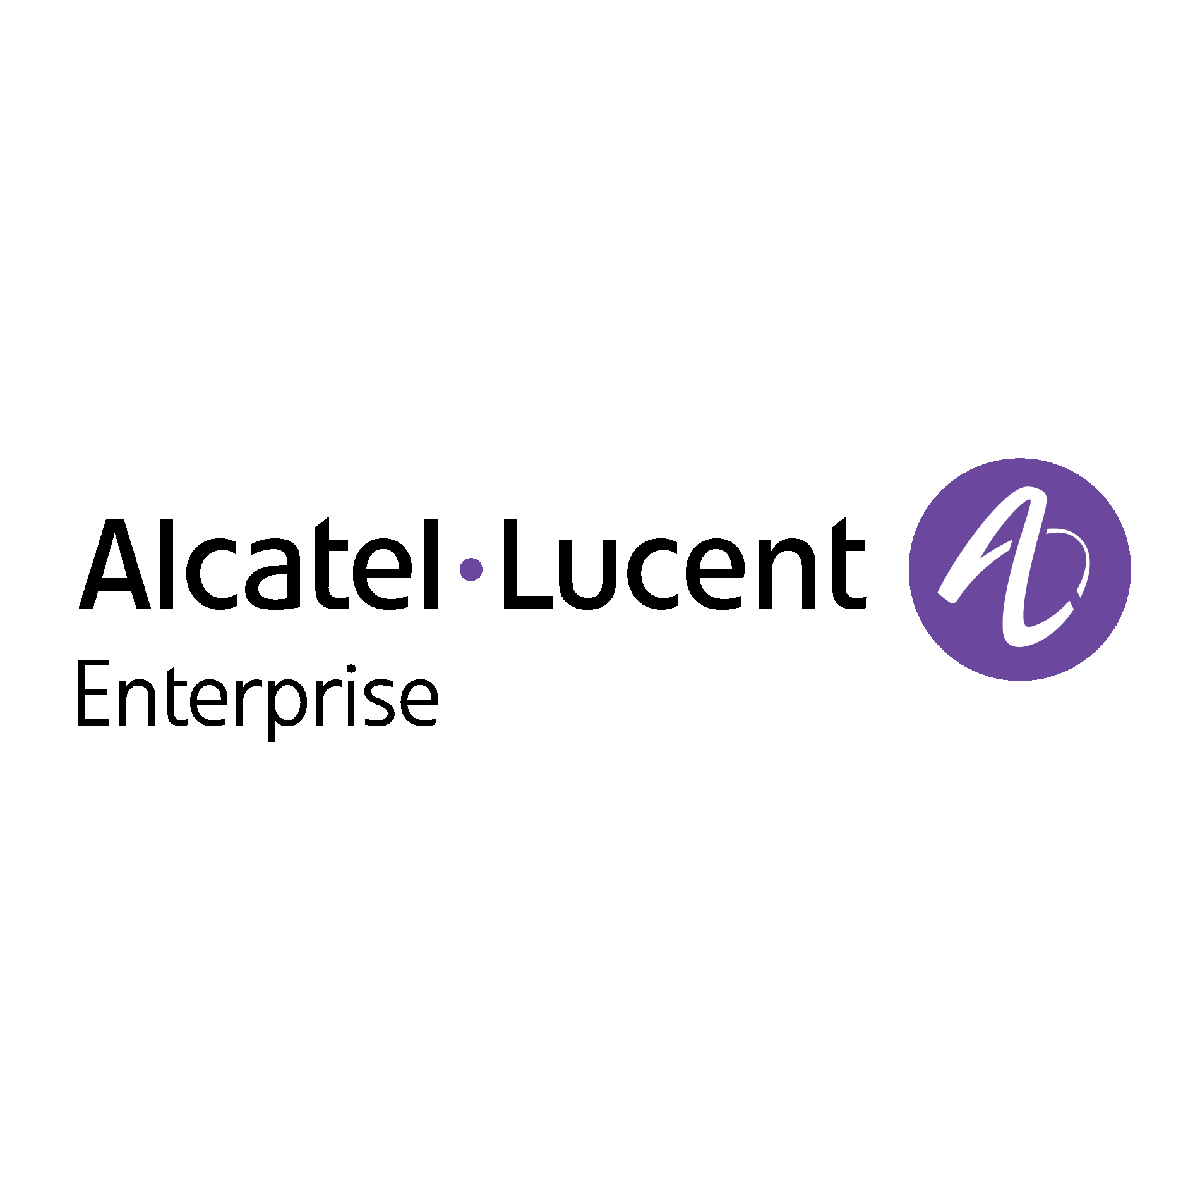 Alcatel Lucent Enterprise.